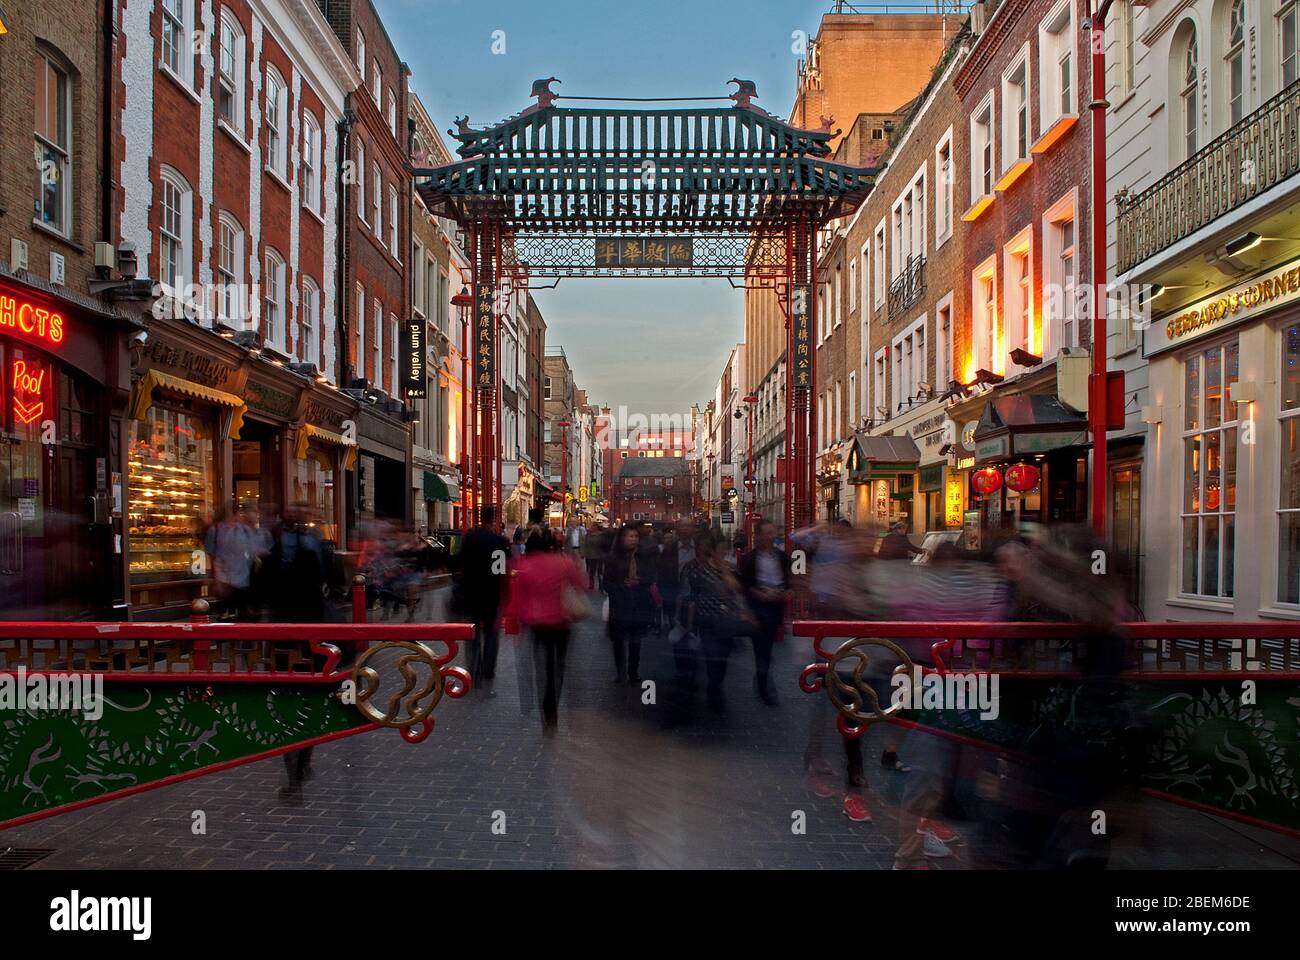 China Community Chinatown Gate, 10 Wardour St, West End, Londres W1D 6BZ Arquitectura Foto de stock